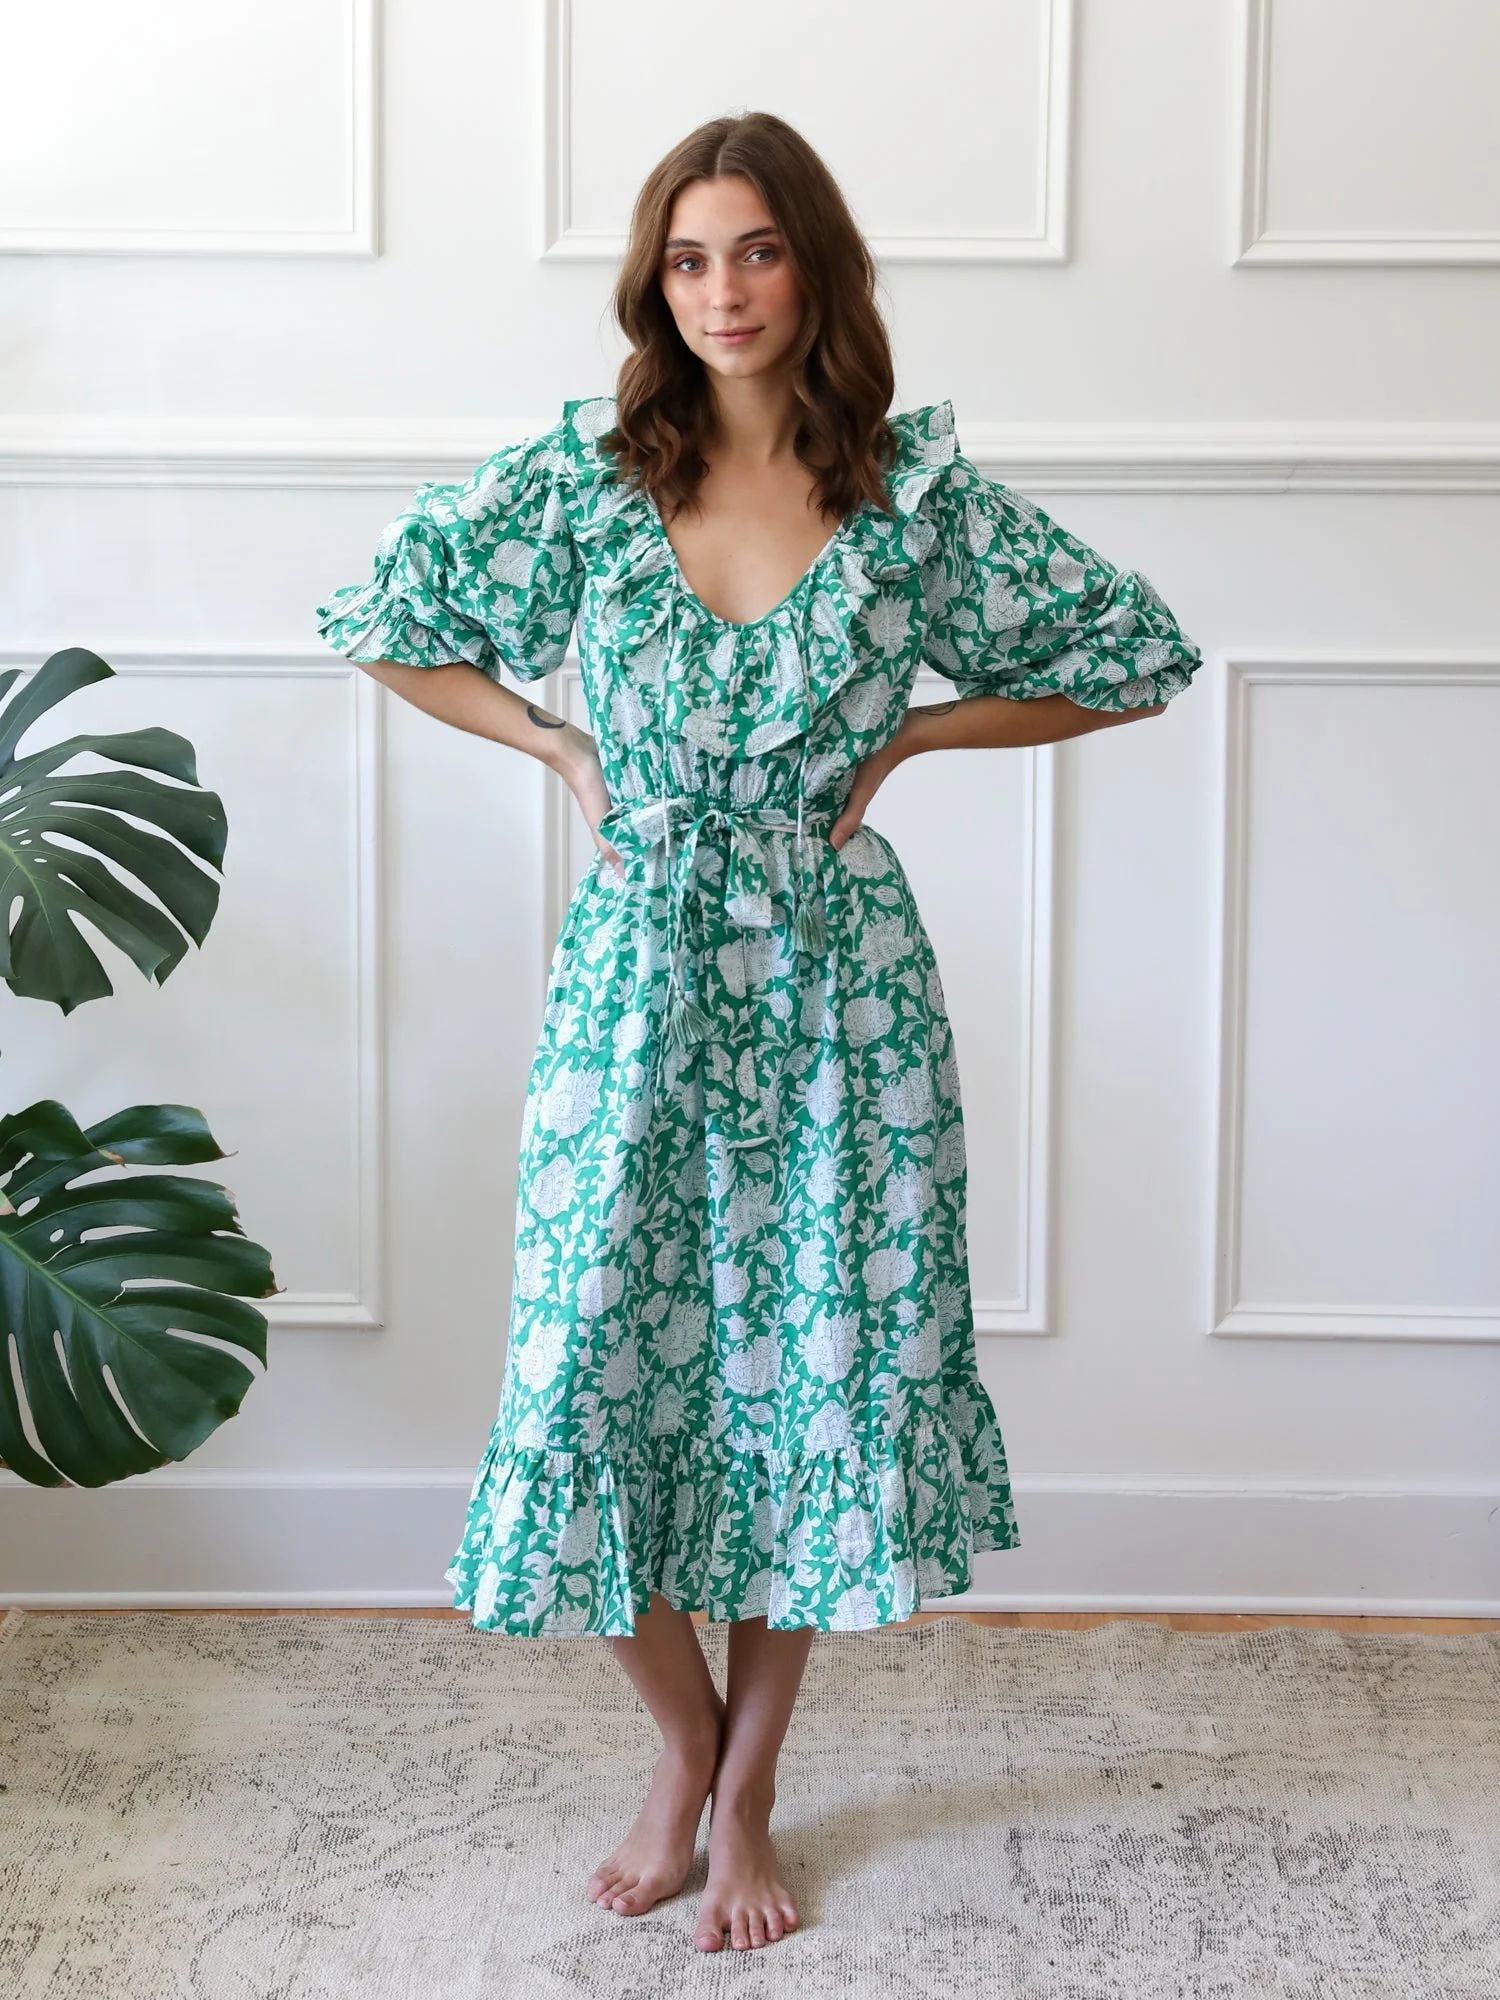 Shop Mille - June Dress in Green Zinnia | Mille